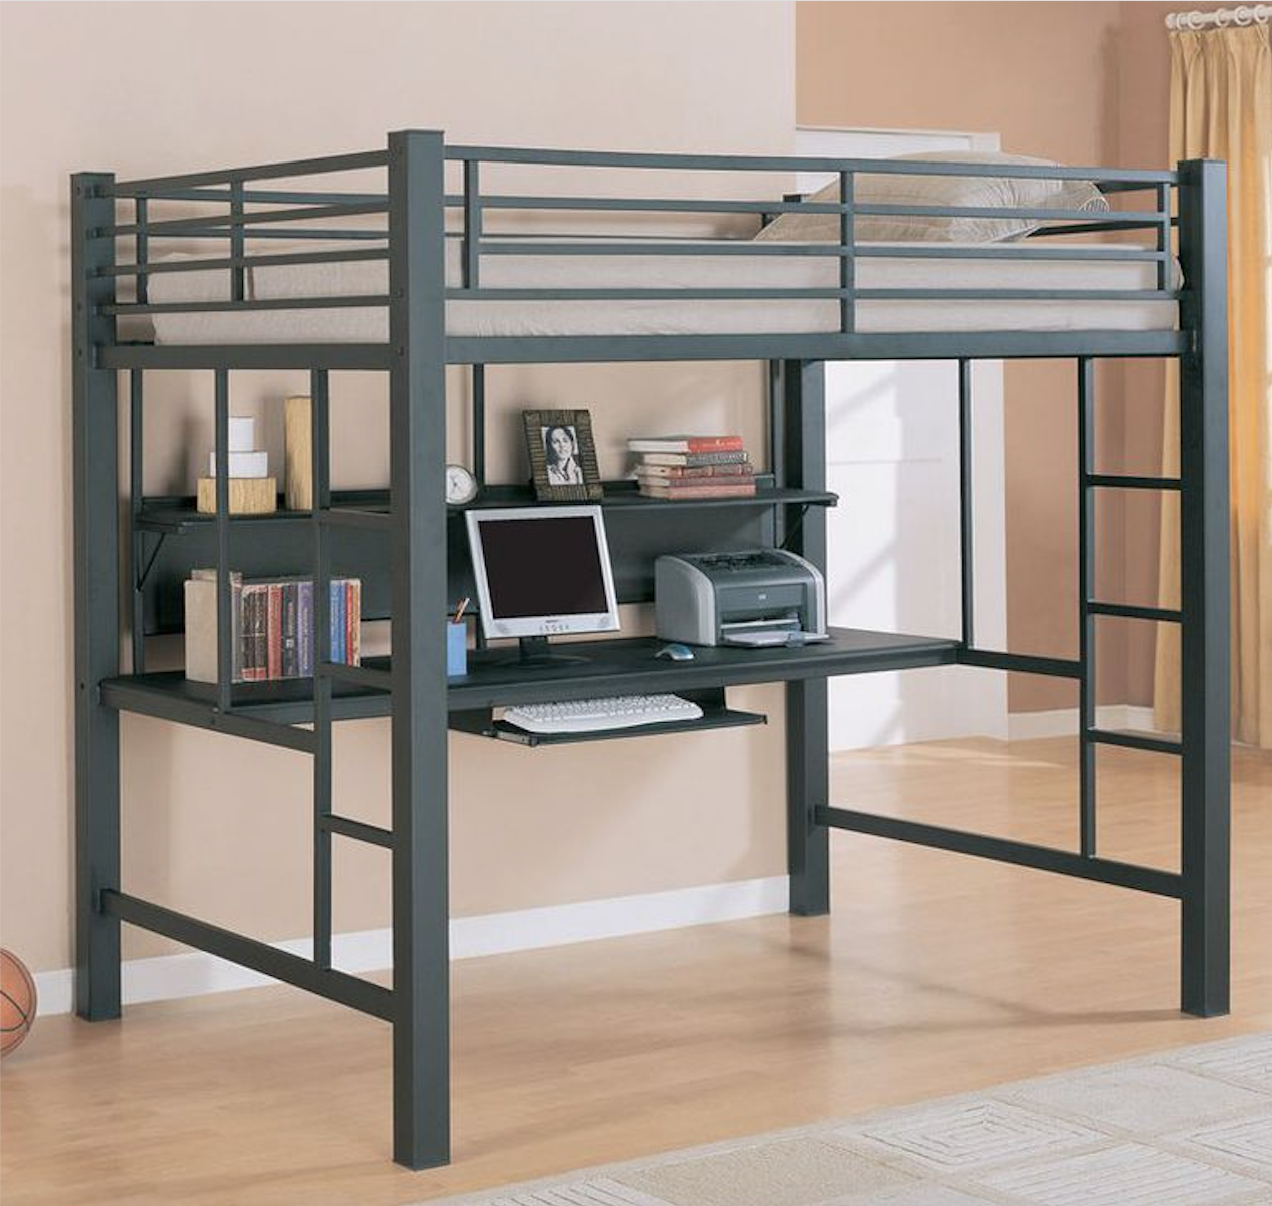 13 Best Loft Beds For S, Wood Frame Full Size Loft Bed With Desk